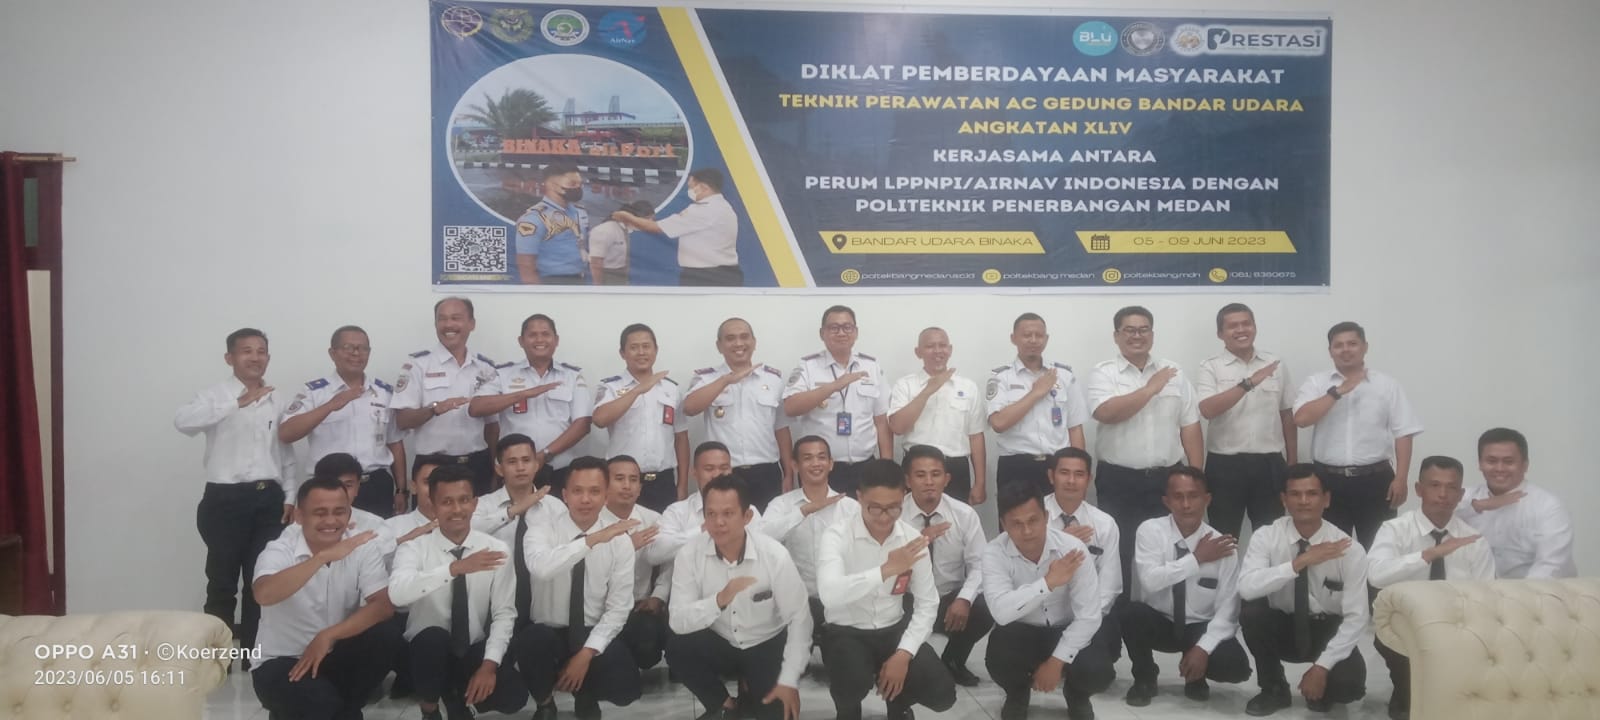 AirNav Indonesia Gandeng Politeknik Penerbangan Medan Latih Masyarakat Di Bandara Binaka